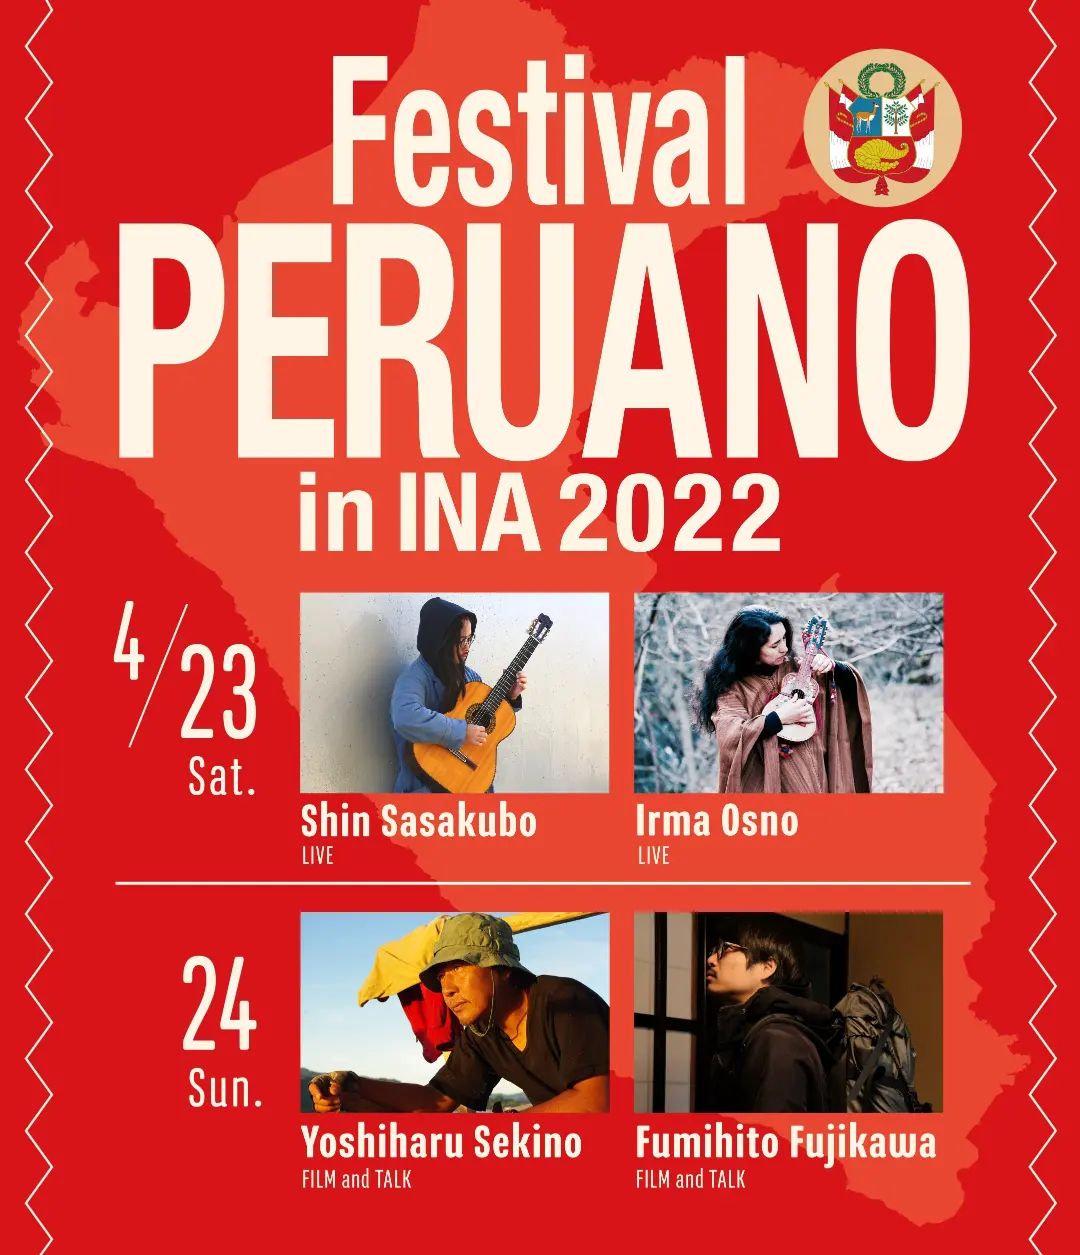 Buenas Tardes. こんにちは。4月18日（月）から24日（日）まで、「ペルー祭り」を開催します。昨年の暮れ、出会う人出会う人がペルーと関わりのある人ばかりで、これはもう全員をお呼びしてお祭りにしましょうという所から始まりました。関野吉晴さんの講演会、笹久保伸さんとIrma Osnoさんのアンデス音楽のライブ、ペルー映画、ペルー料理など目白押しの一週間です。ご興味を持っていただけると幸いです。Por Favor. よろしくお願いします。−−−−−−−−−−−−−−ペルー祭りの詳細・予約方法は下記のURLからご確認いただけます。赤石商店のウェブサイトをチェックしてみてください。https://akaishi-shouten.com/archives/7879−−−−−−−−−−−−−−２枚目の映像は、長男が大芝の湯でまっくんを釣る演技です。TikTokだとバズってしまいそうなので、ここにひっそりと置いておきます。埋橋家は今日もなんとか健康です。#ペルー祭り #関野吉晴 #笹久保伸 #shinsasakubo #irmaosno #藤川史人 #まっくん